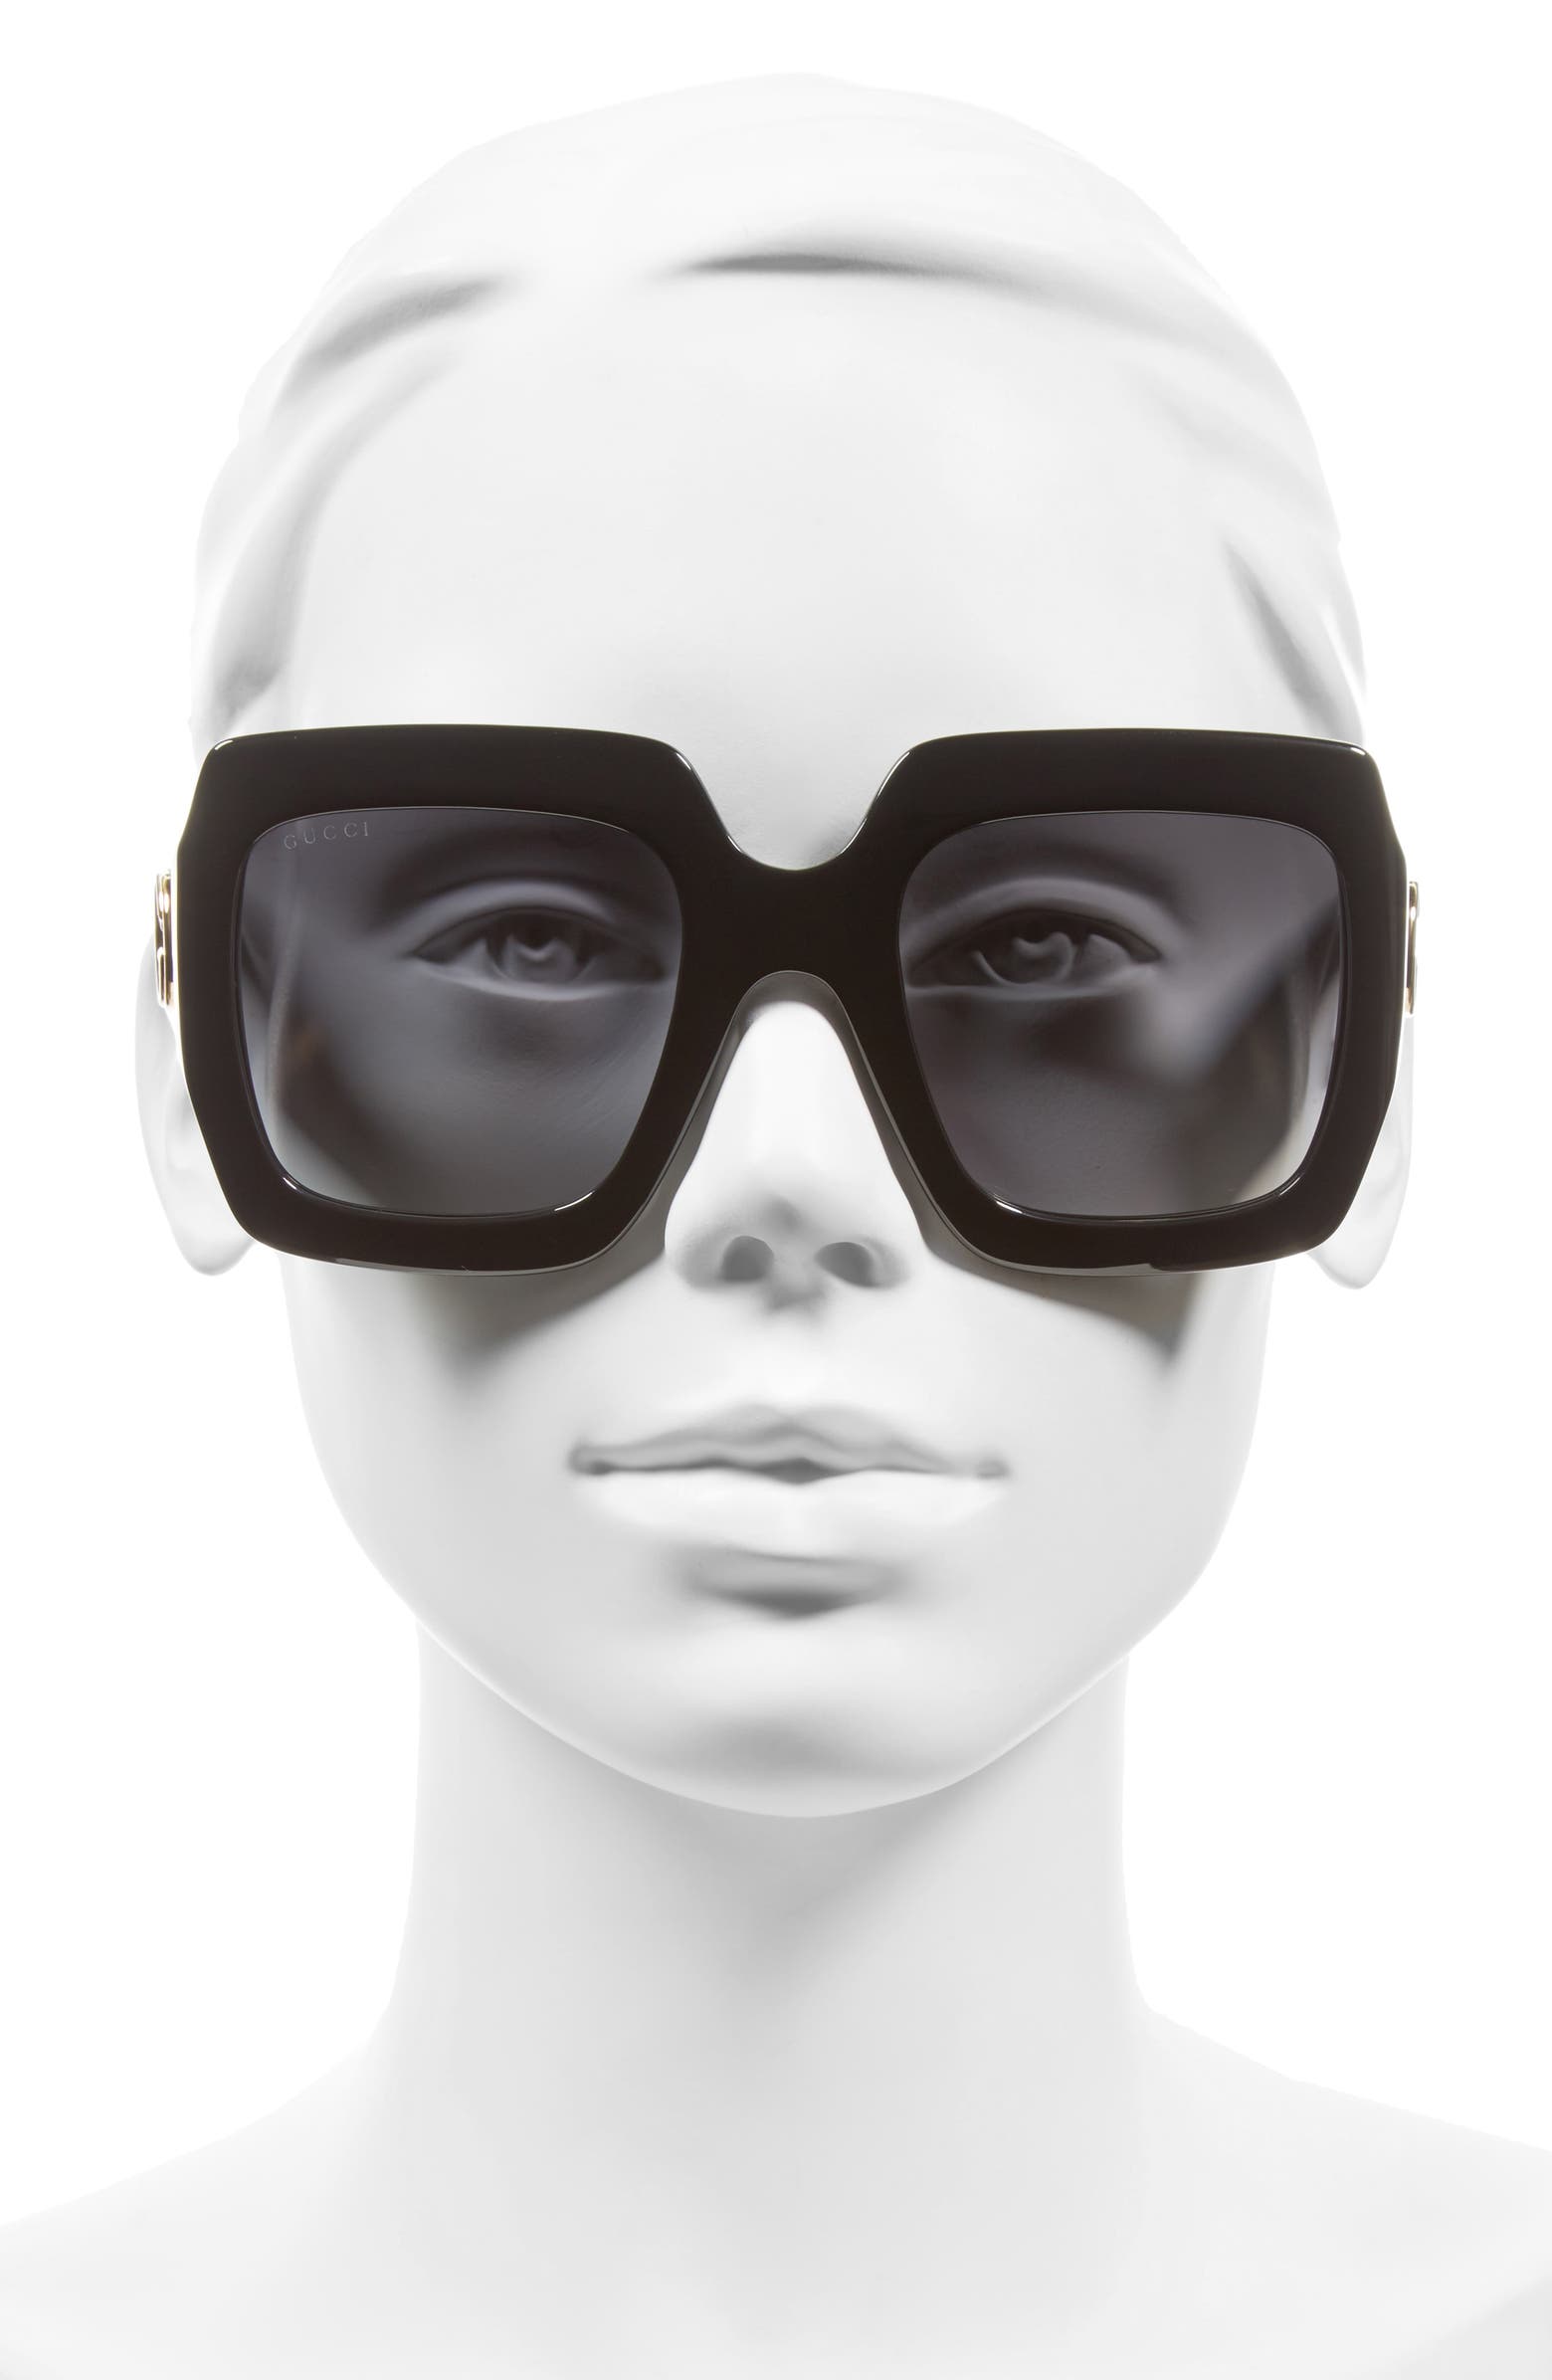 Gucci 54mm Square Sunglasses | Nordstrom